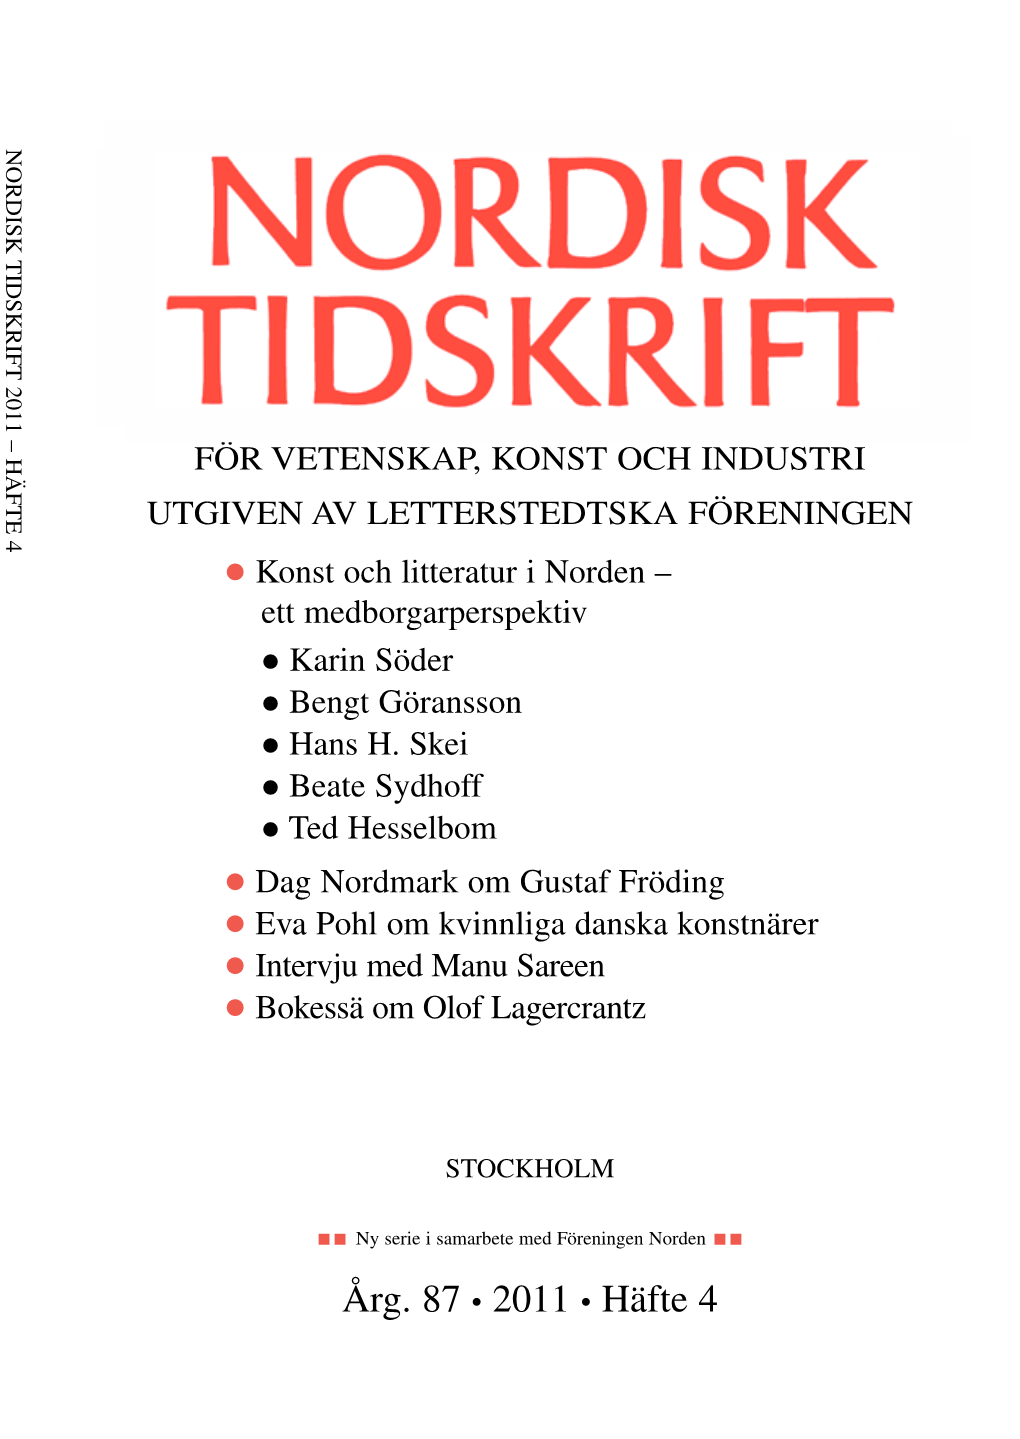 Nordisk Tidskrift NT4-11 (Pdf)